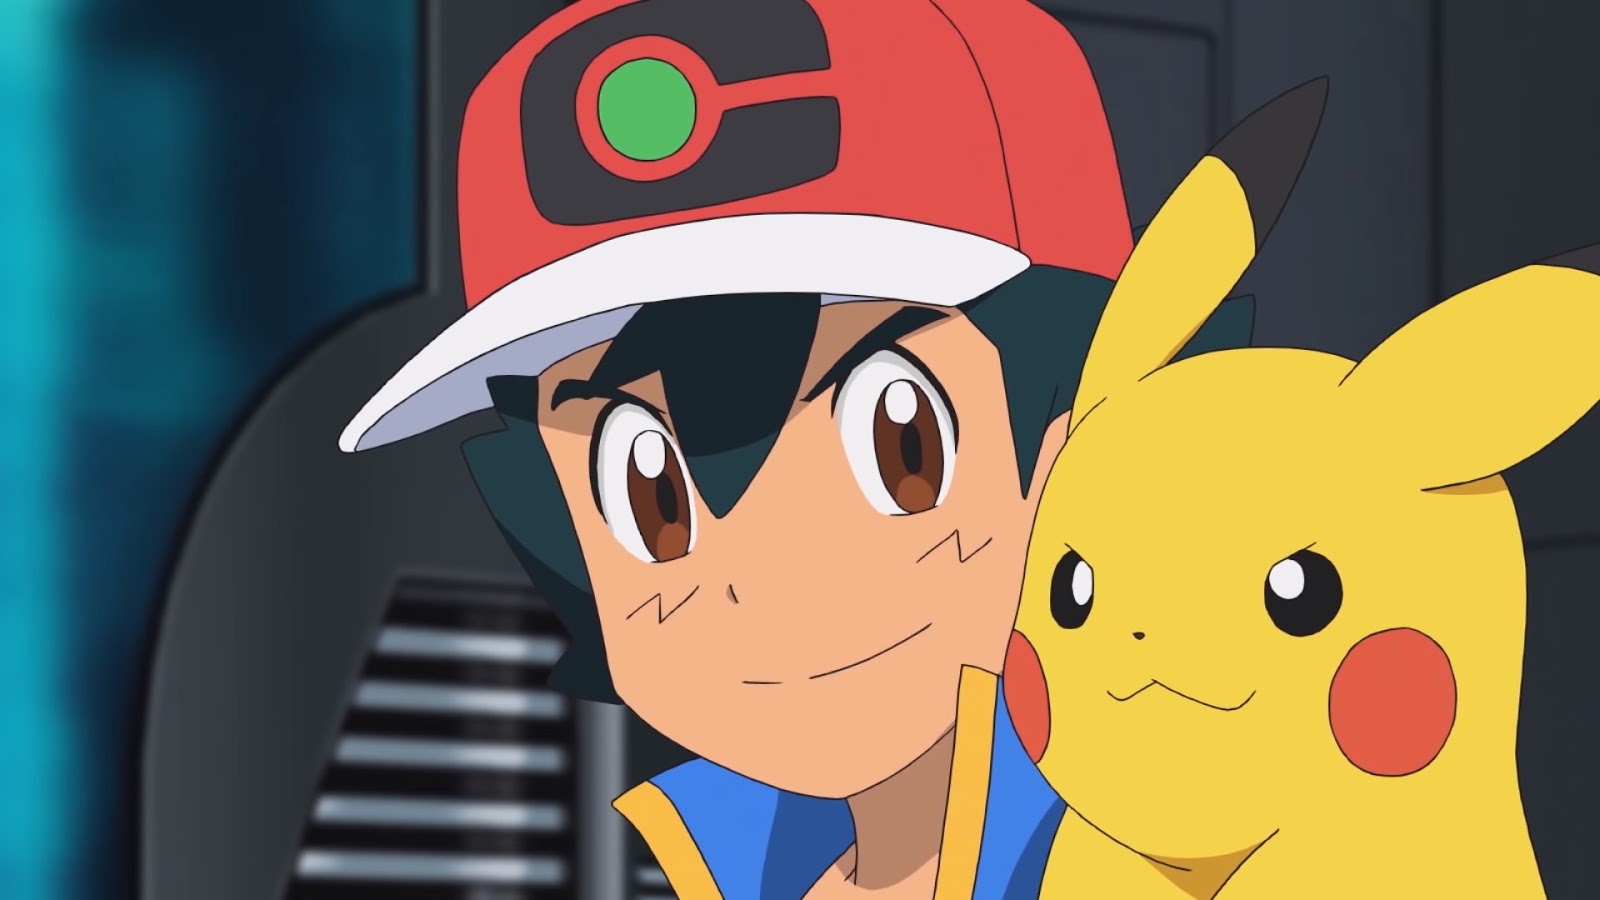 História Ash o lendário treinador Pokémon - História escrita por